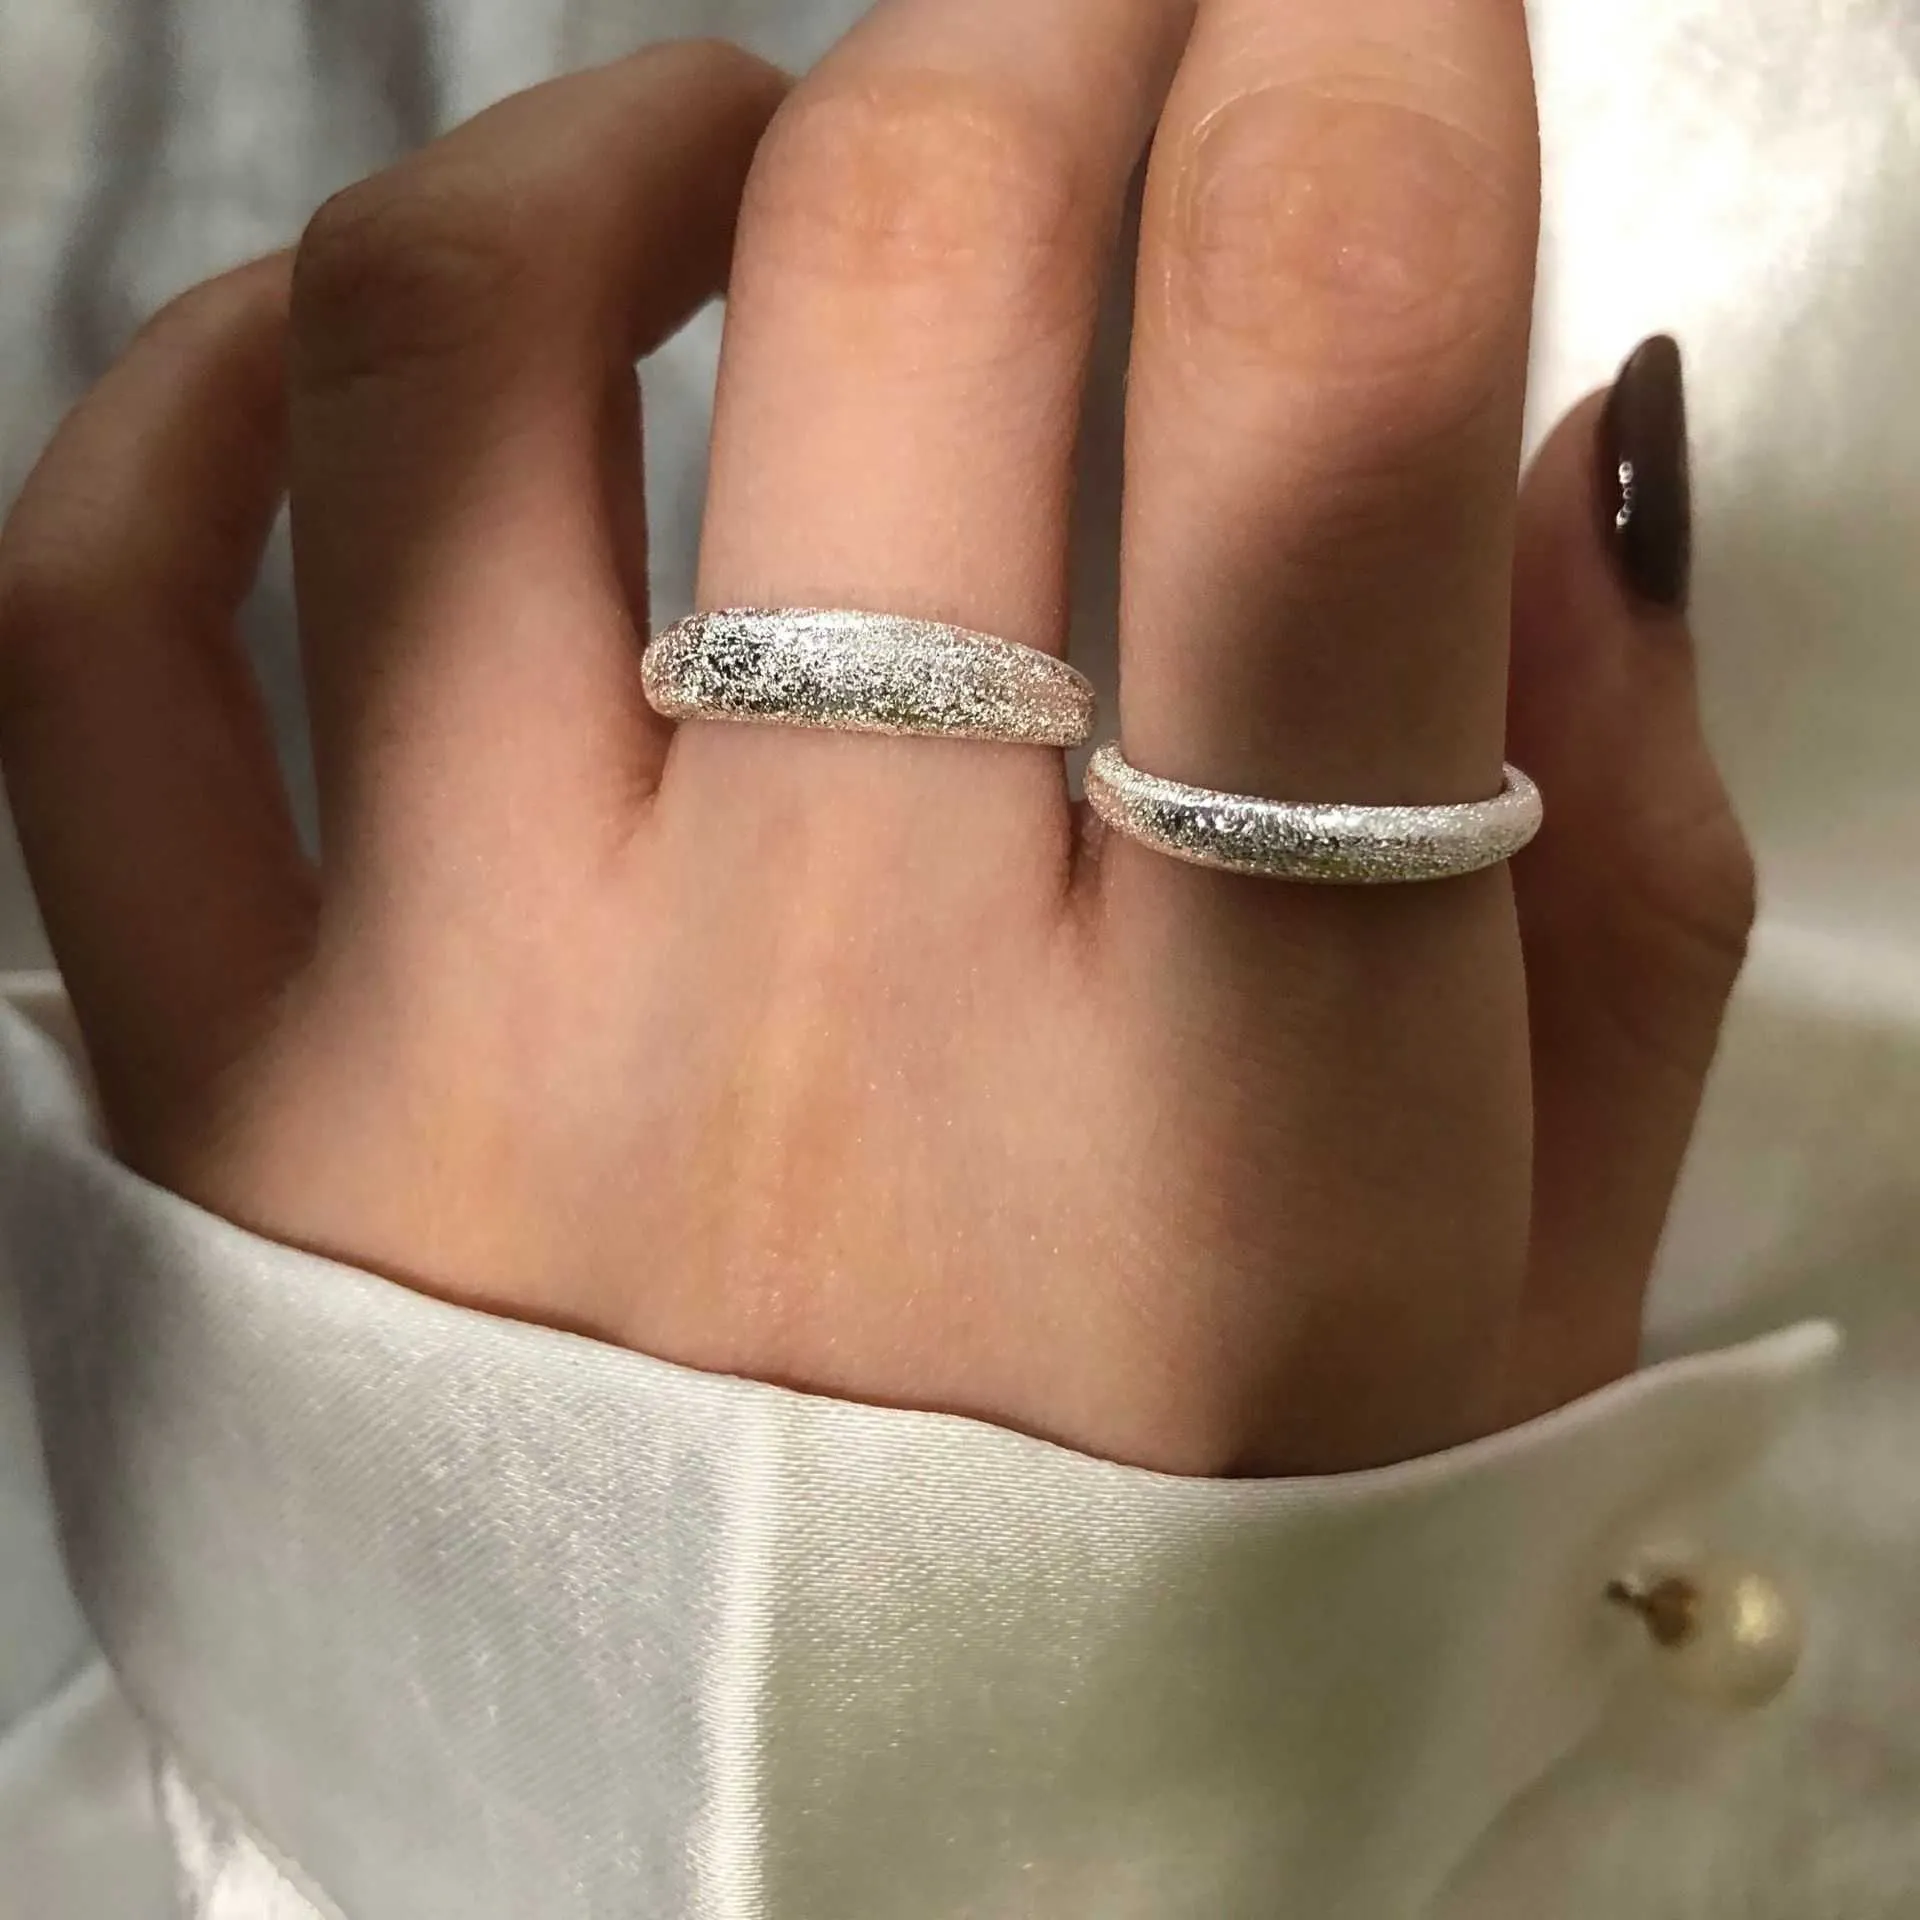 Real 925 Стерлинговое серебро Flash Открытое кольцо Женщины Мода Ювелирные Изделия Регулируемое кольцо для подруги Подарочная Пара Свадебное кольцо Парча X0715